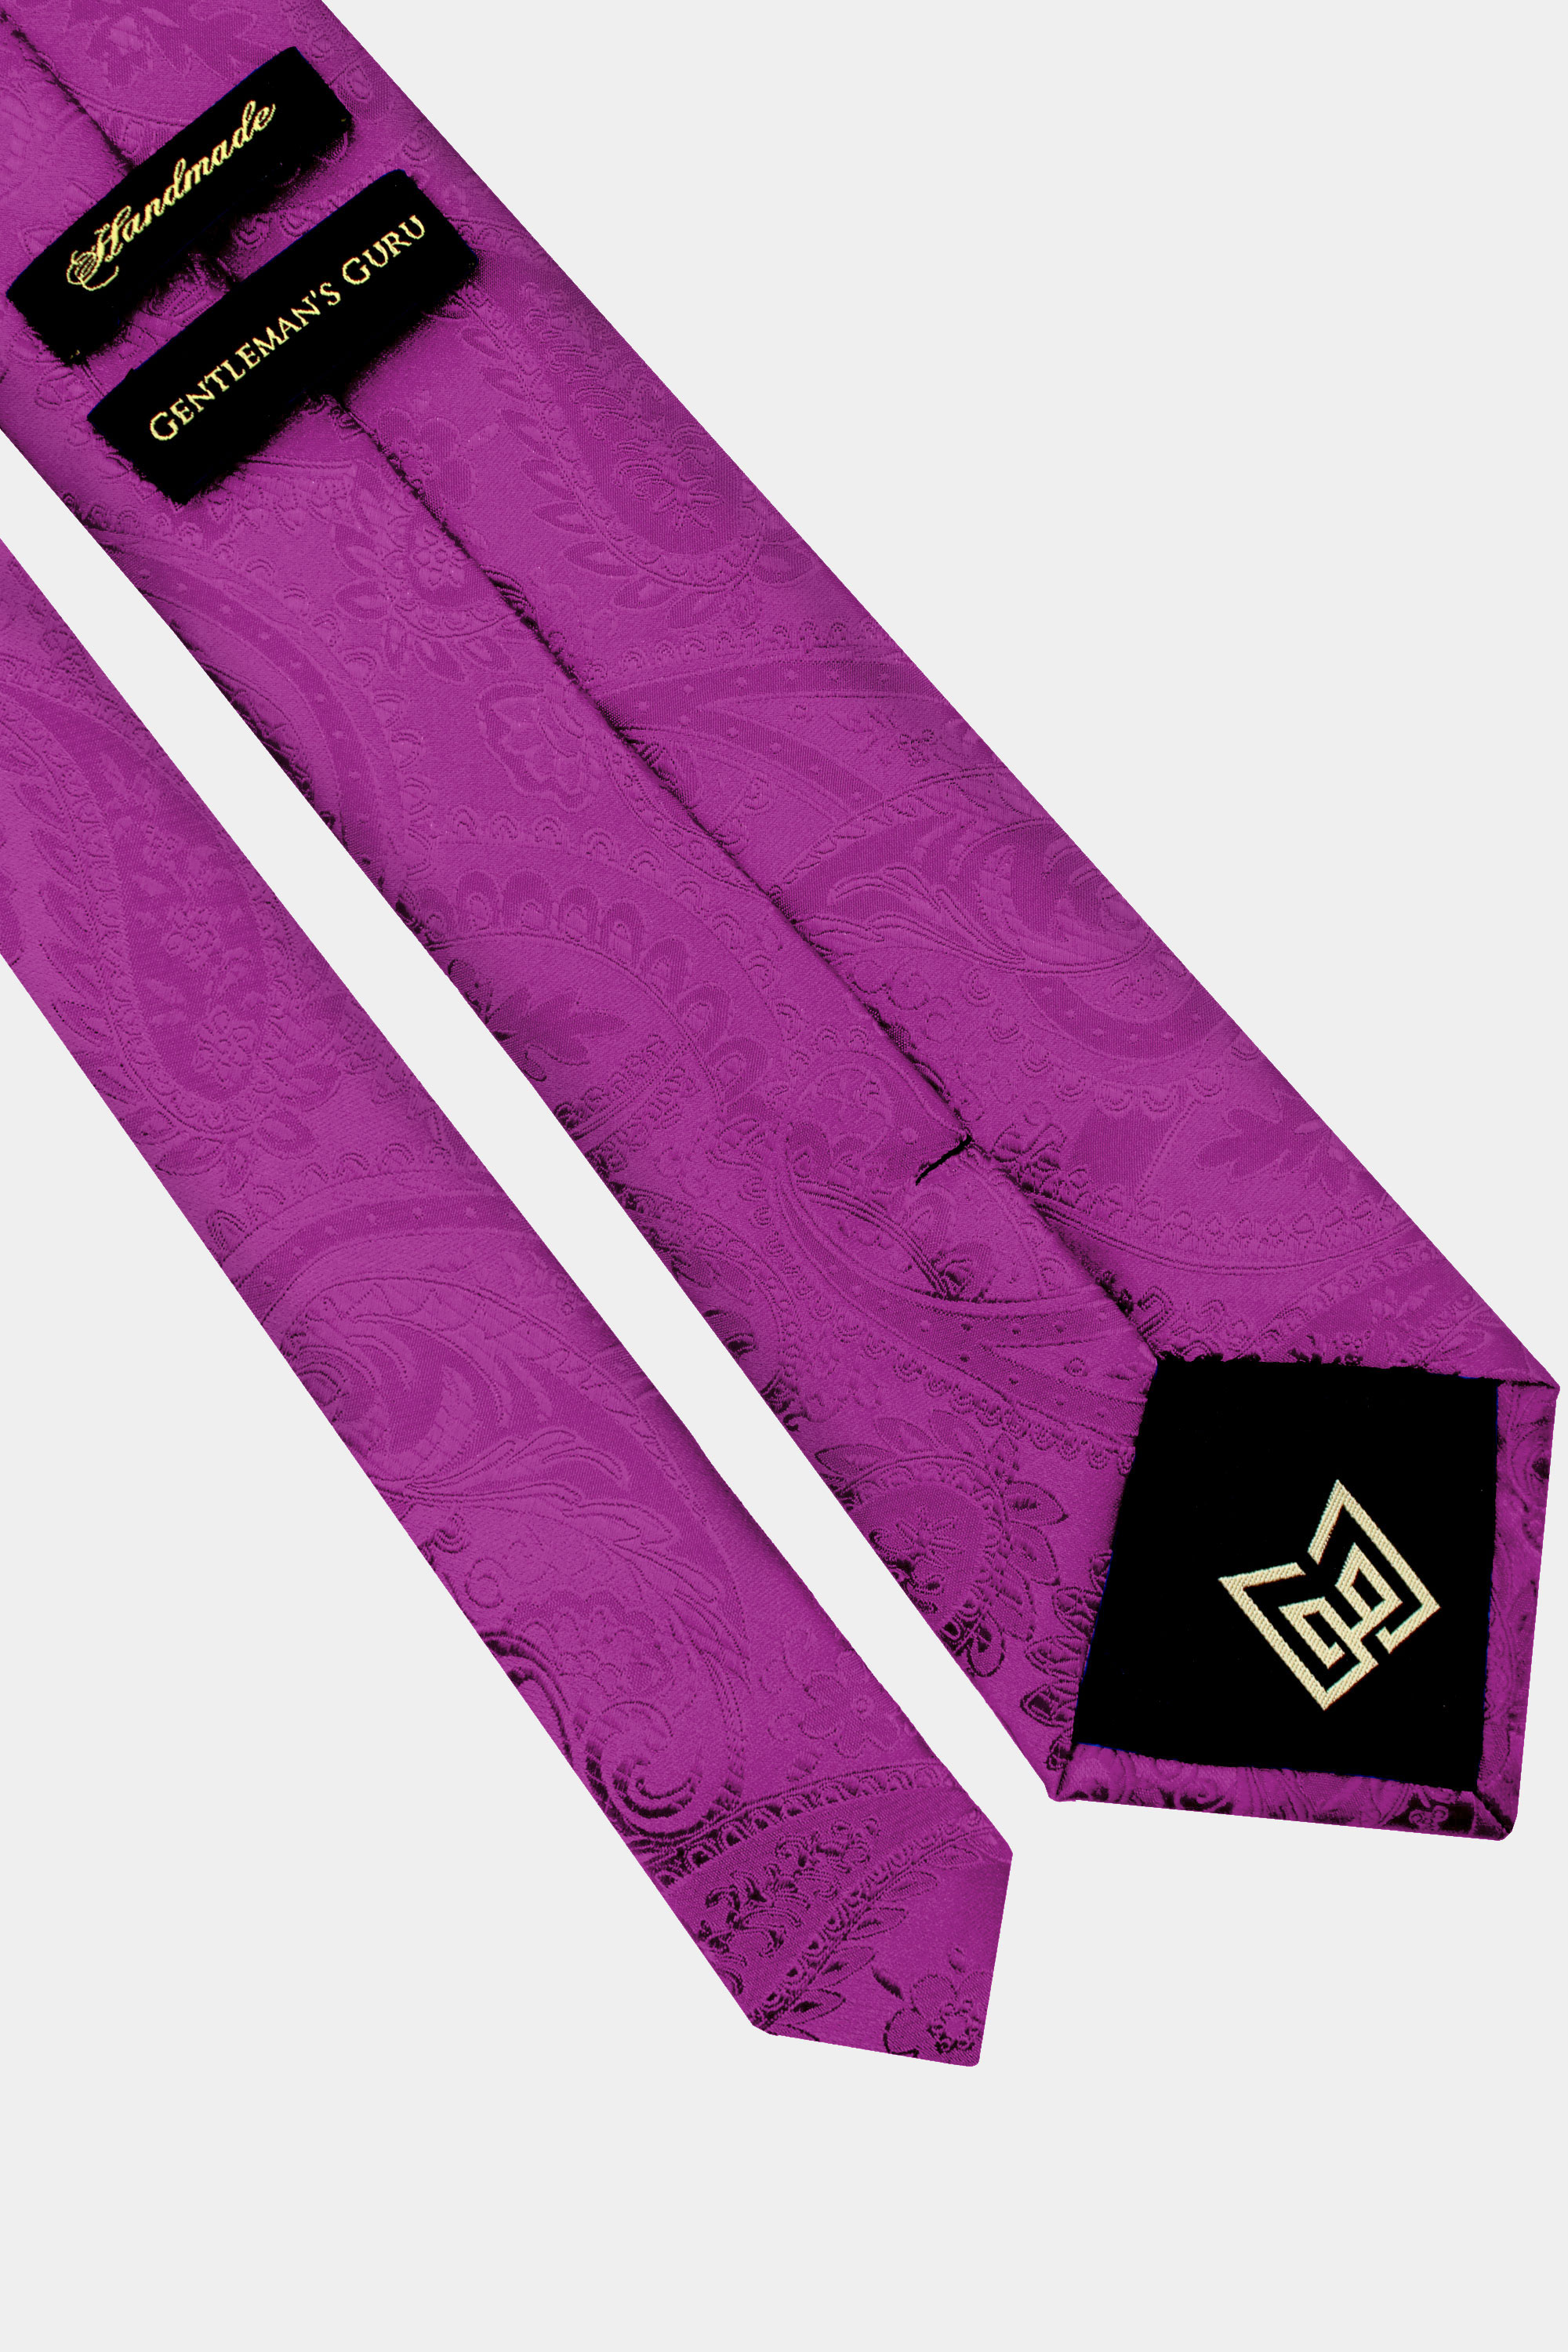 Magenta-Paisley-Tie-from-Gentlemansguru.com